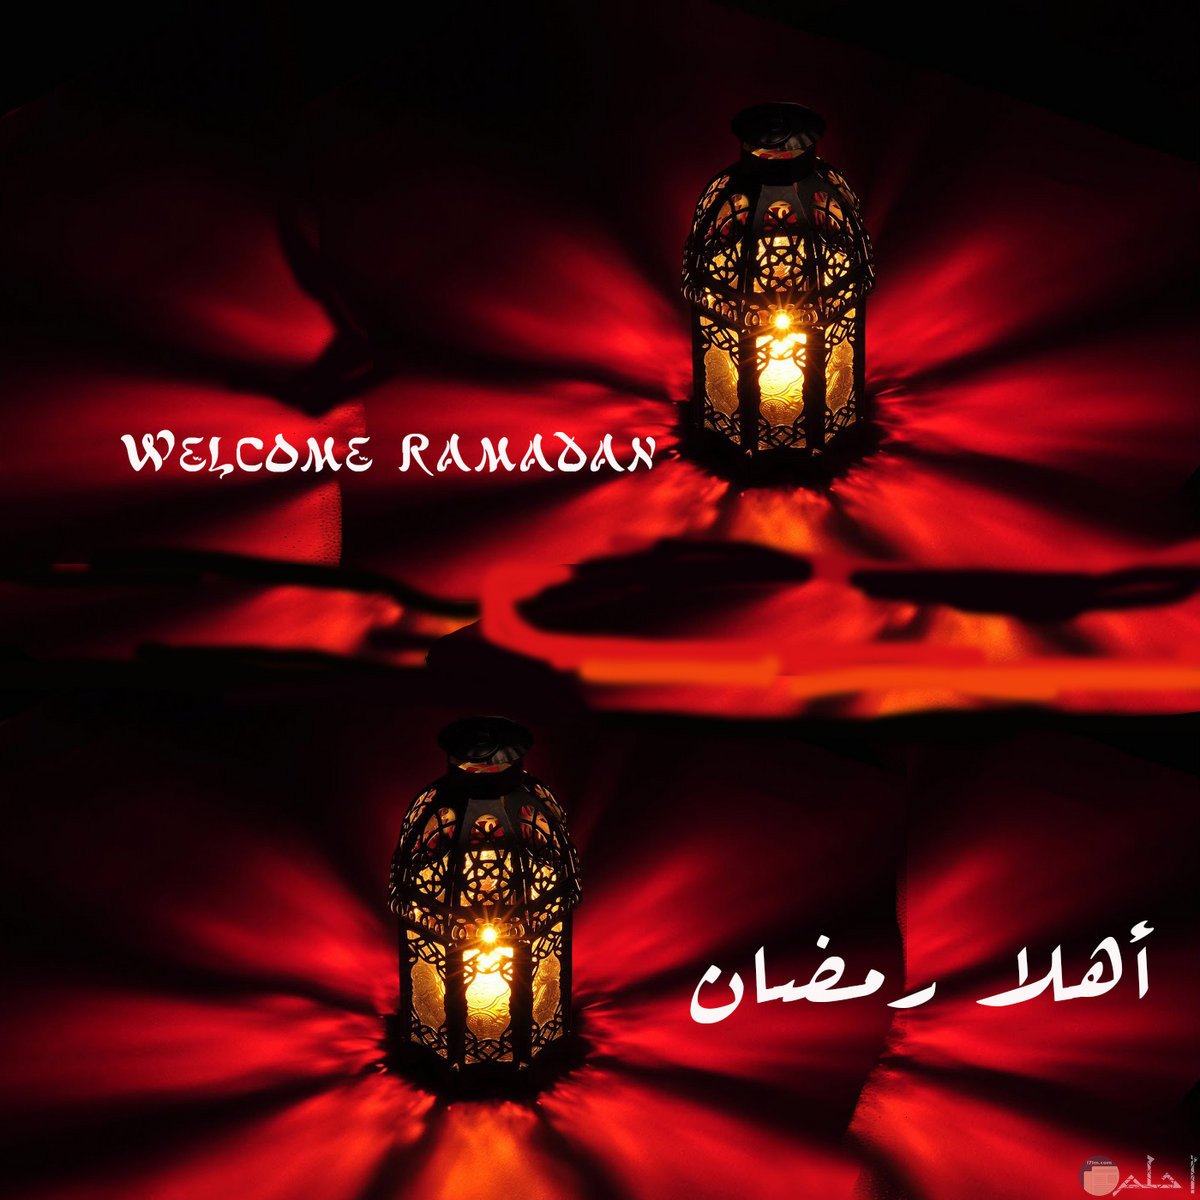 أهلا رمضان مكتوبة بالعربي و بالإنجليزي.